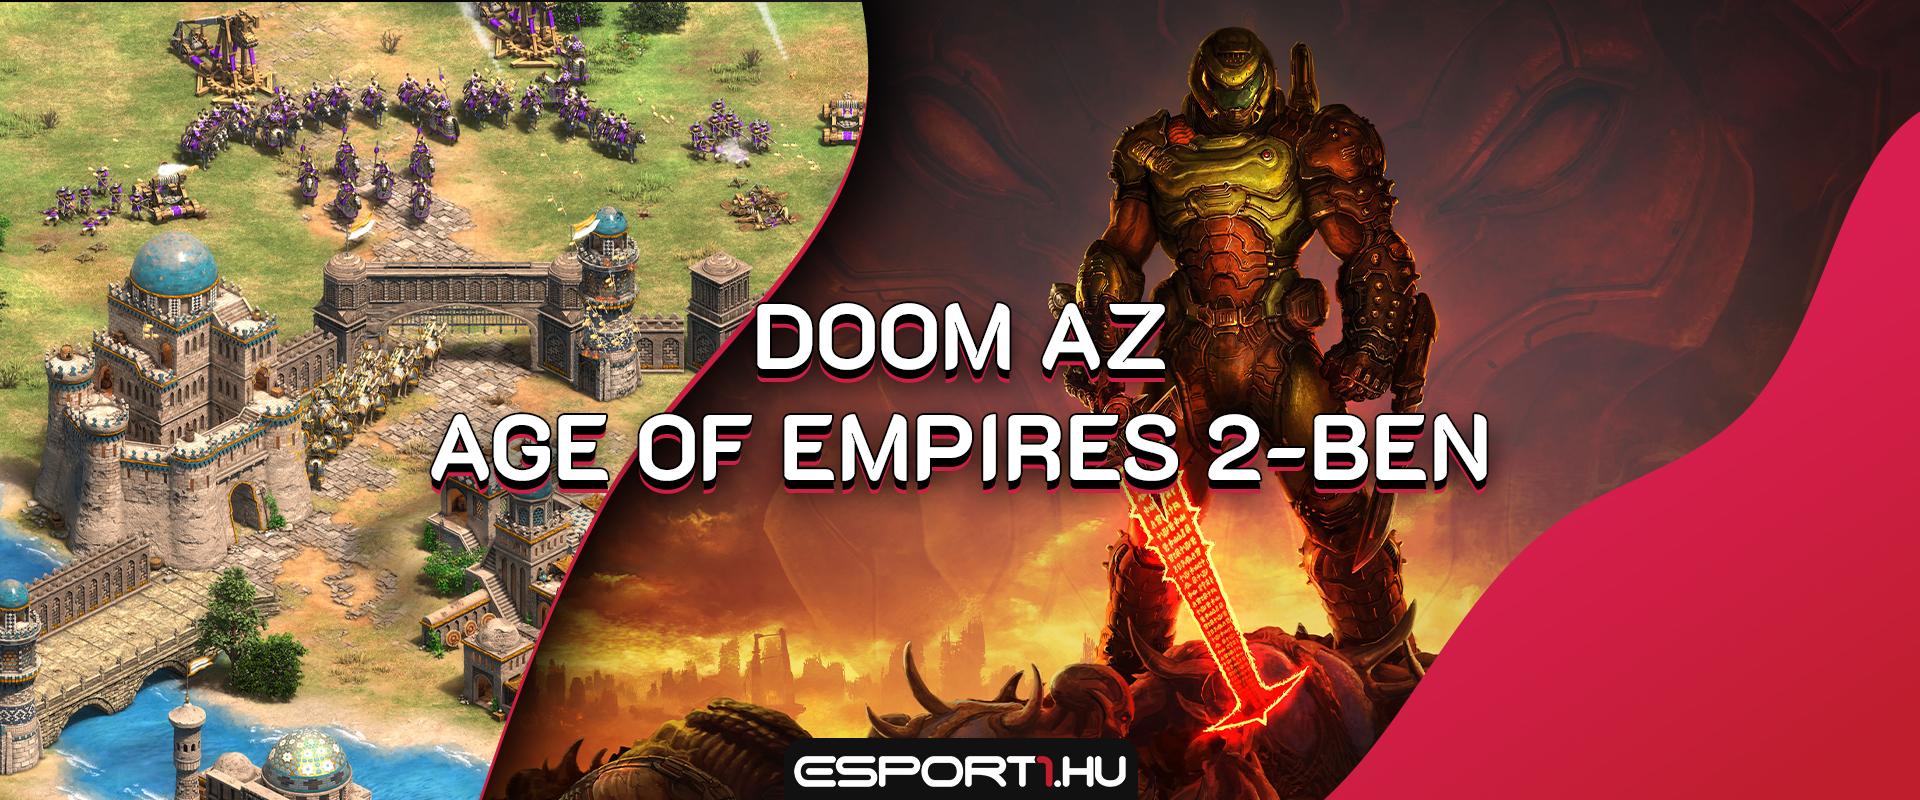 Már az Age of Empires 2-ben is Doomozhatsz